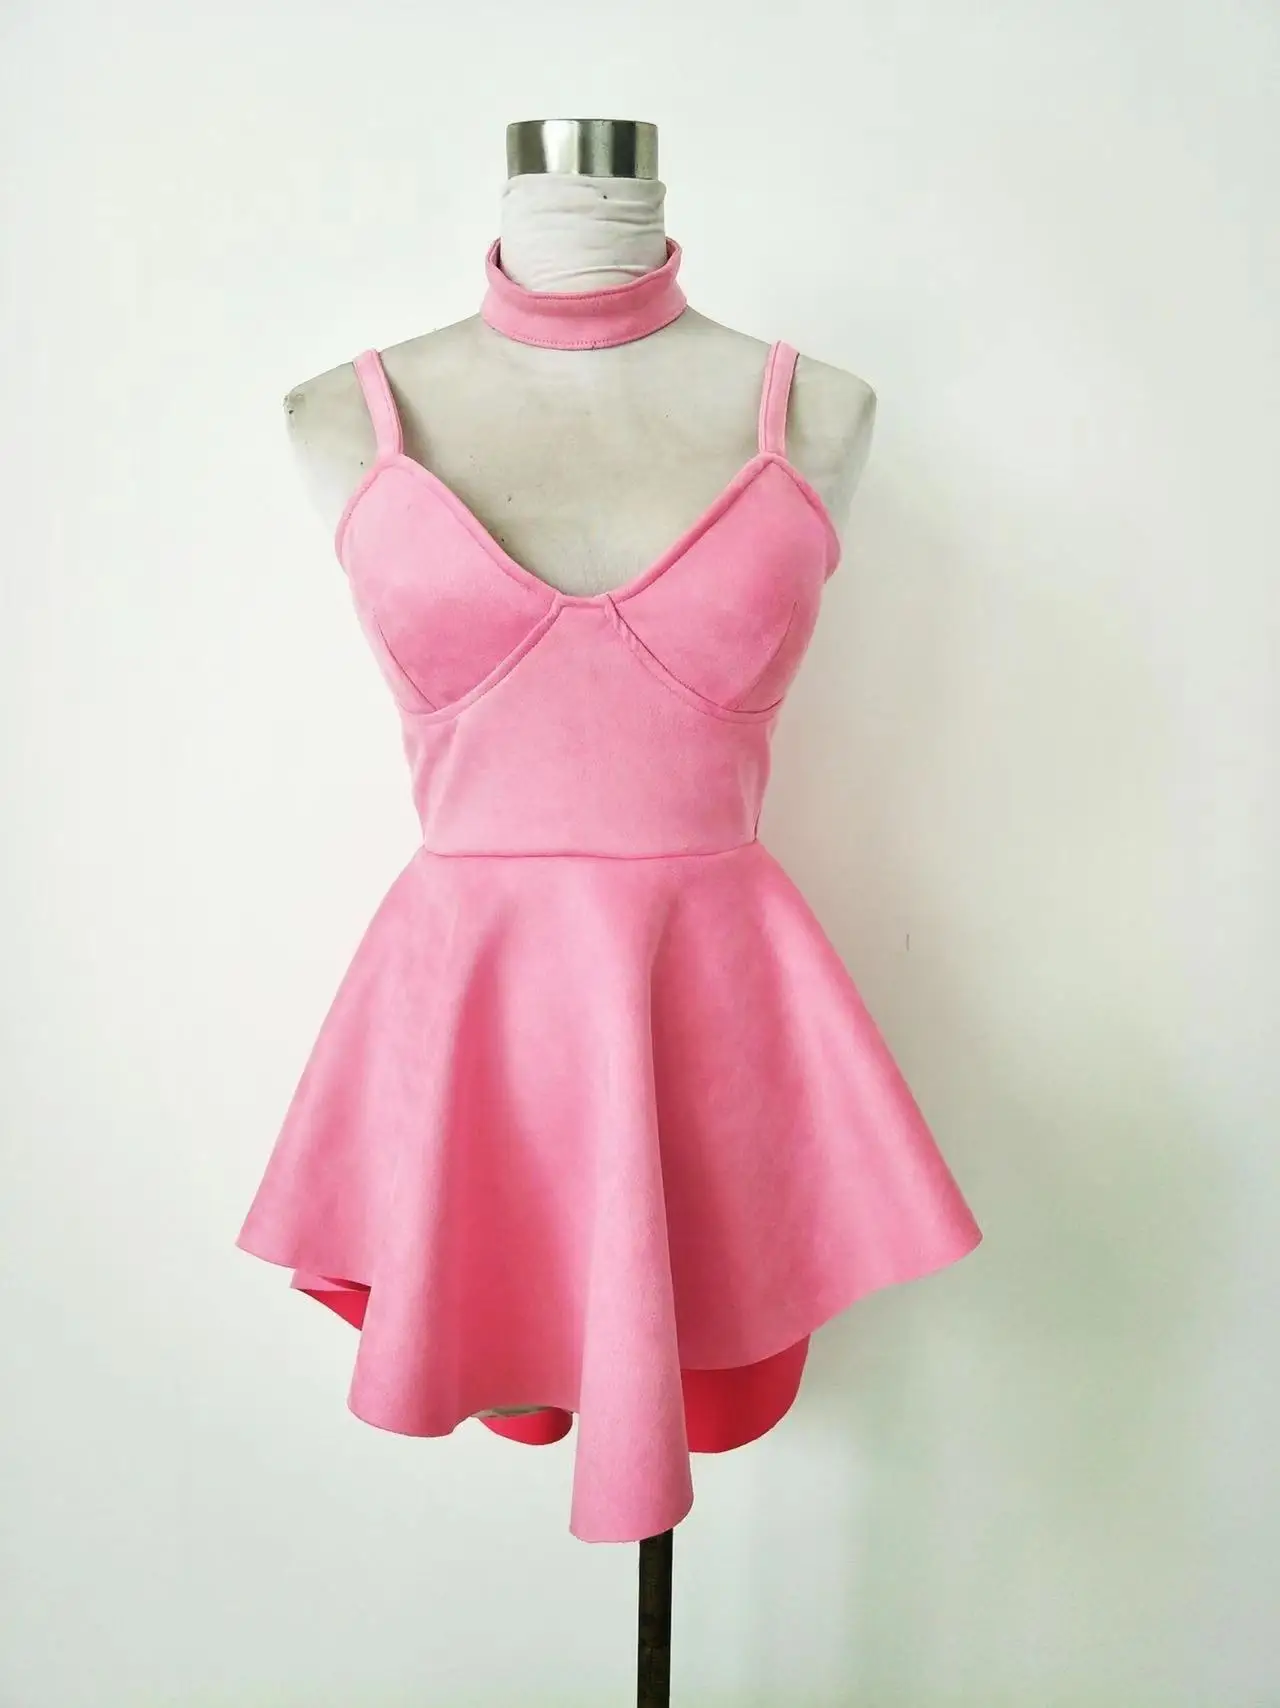 

Новый женский костюм для танцев Bar DS, женское платье для певицы, розовое платье для принцессы, одежда для выступления в ночном клубе, для диджея, джазовых танцев, певиц